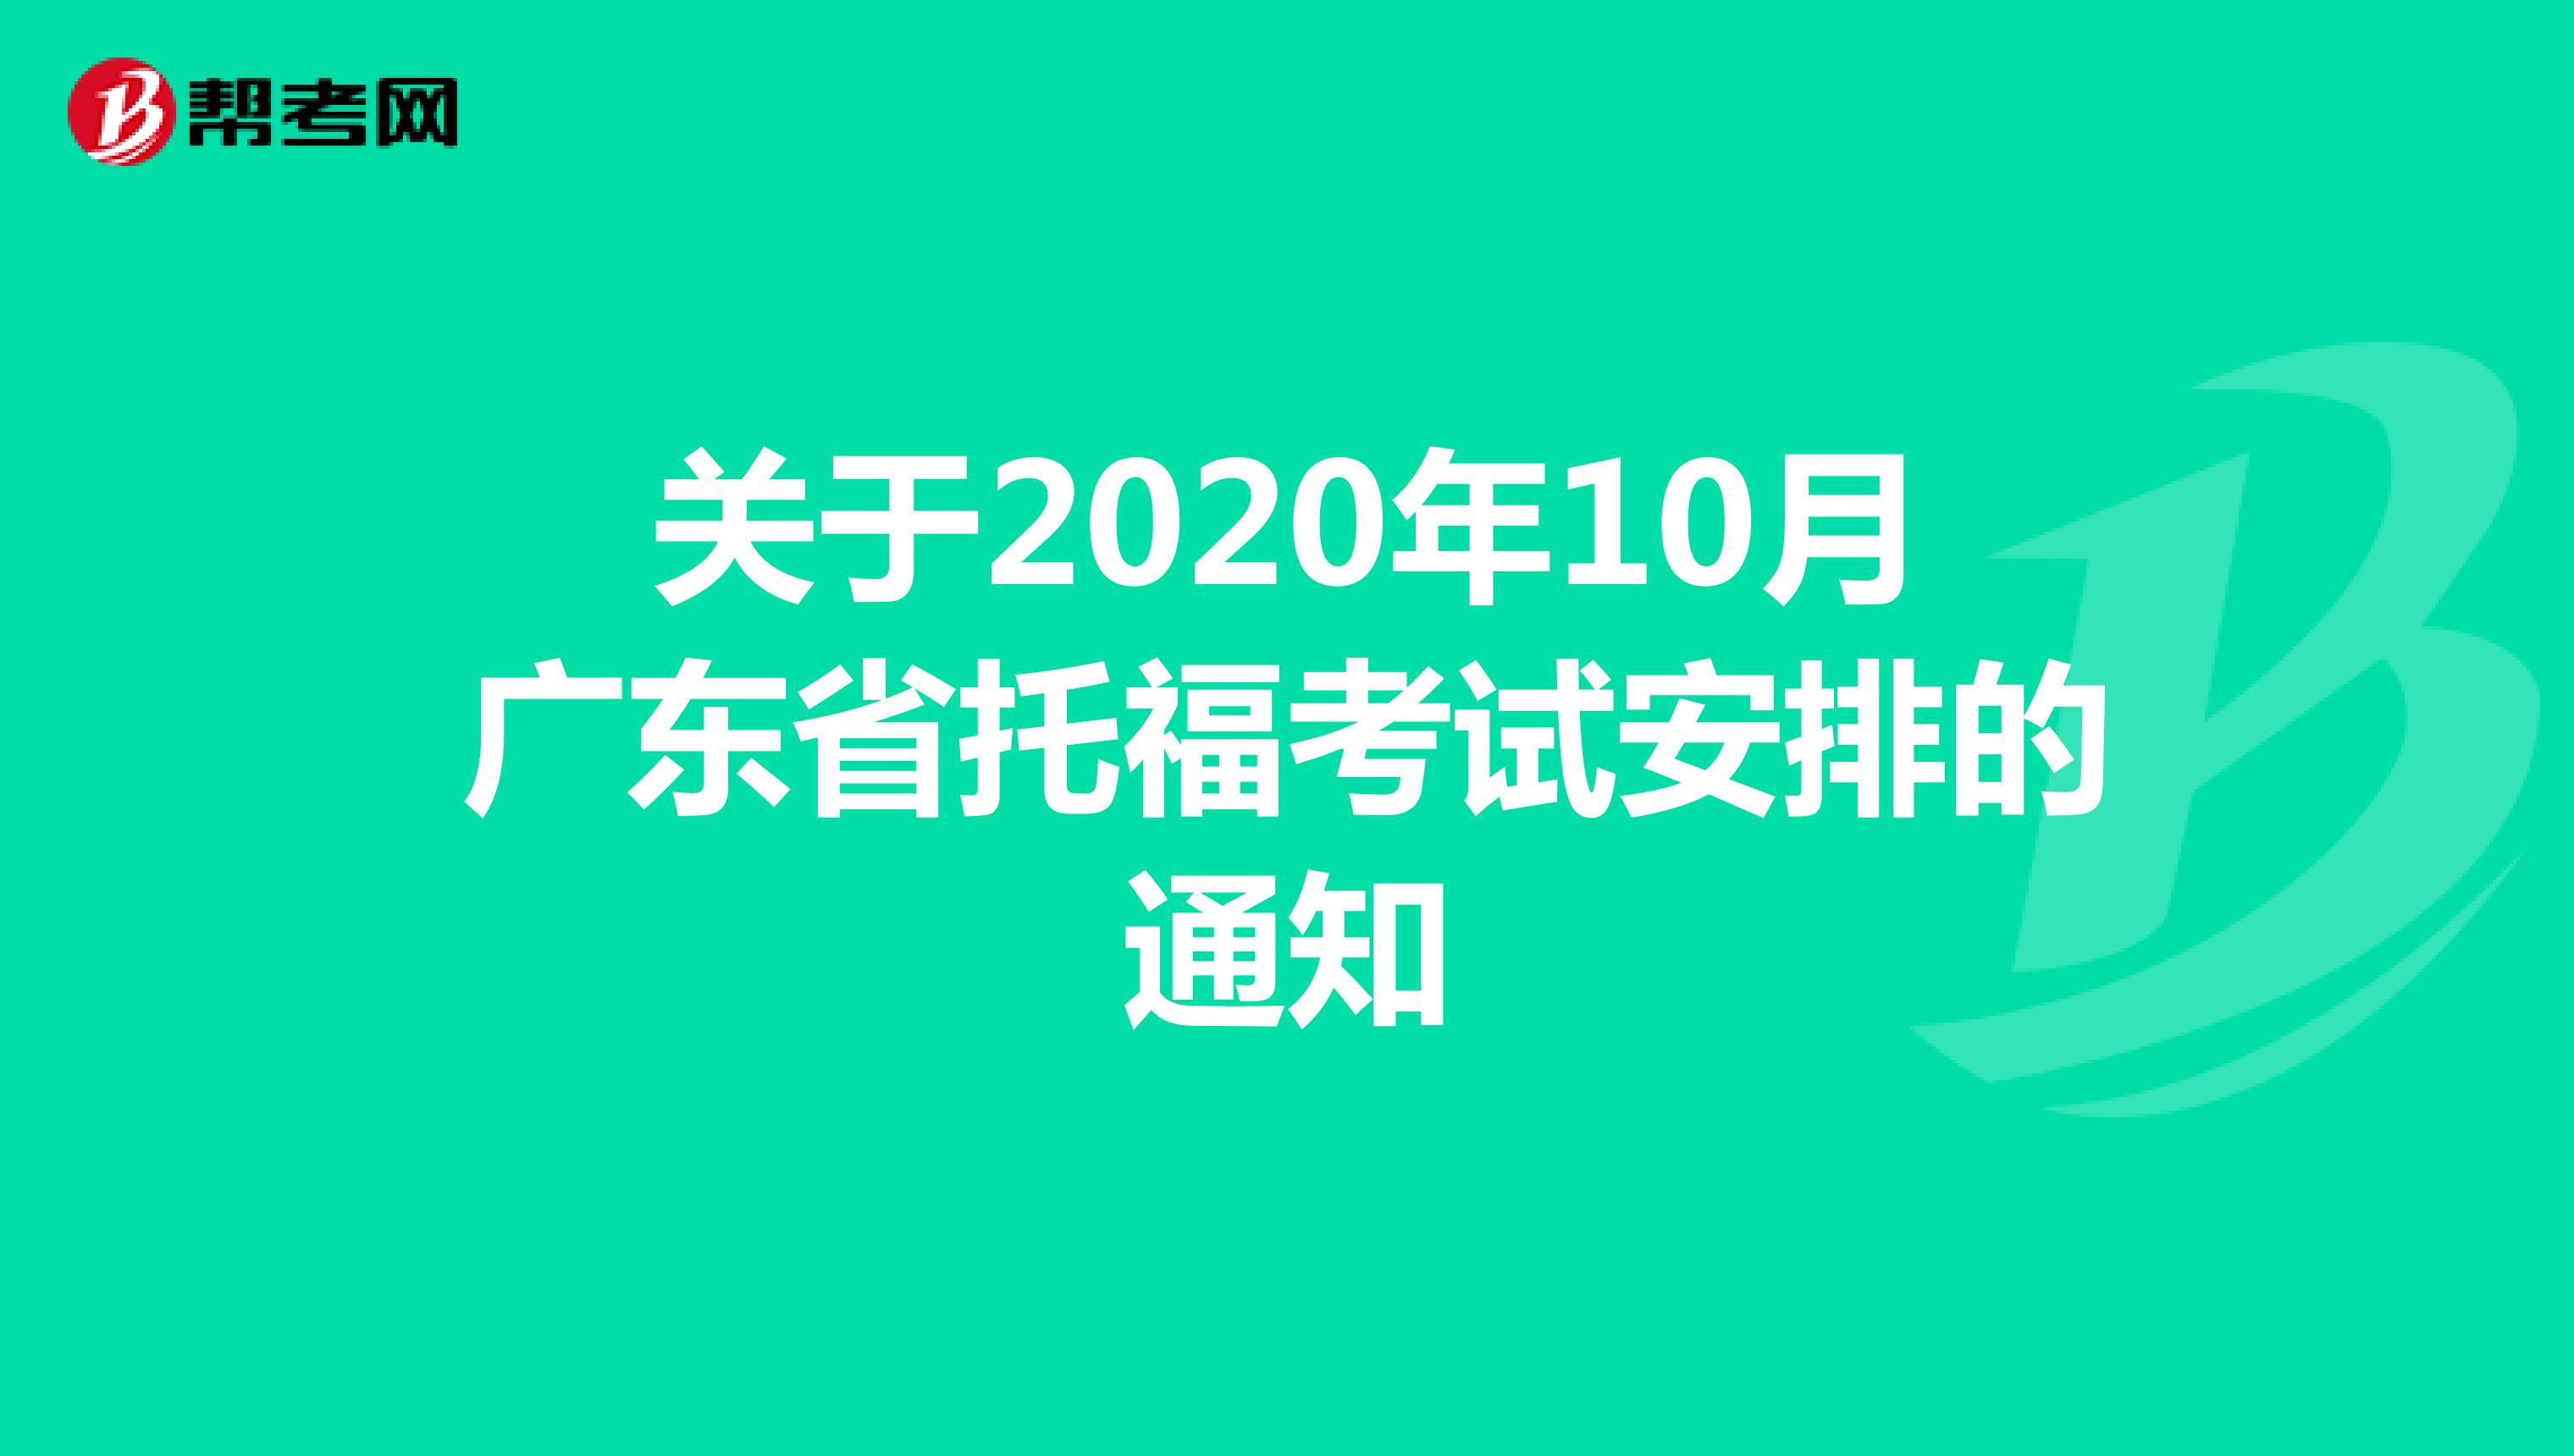 关于2020年10月广东省托福考试安排的通知